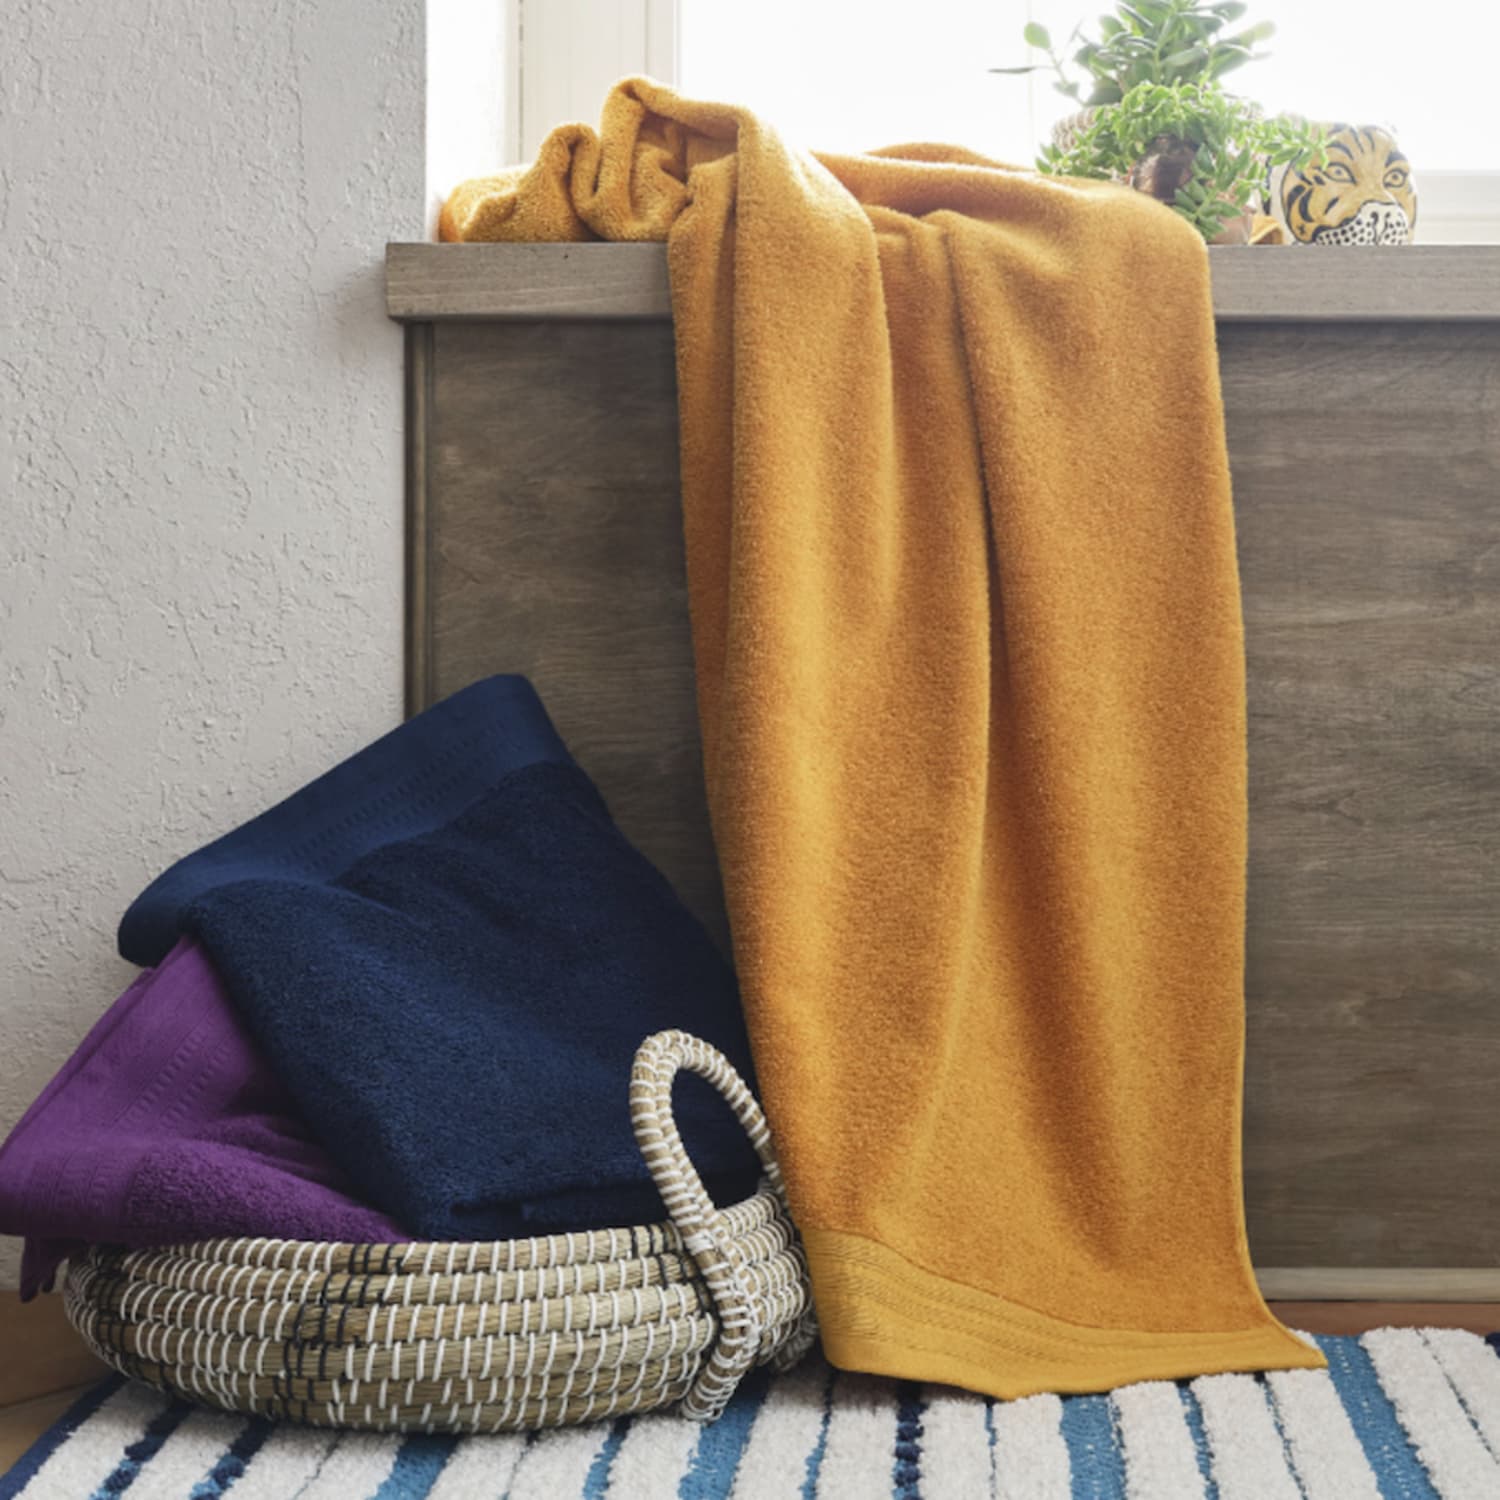 Better Homes & Gardens 2-Piece Oversized Woven Kitchen Towel Set, Dark Cilantro, Size: 20 inch x 30 inch